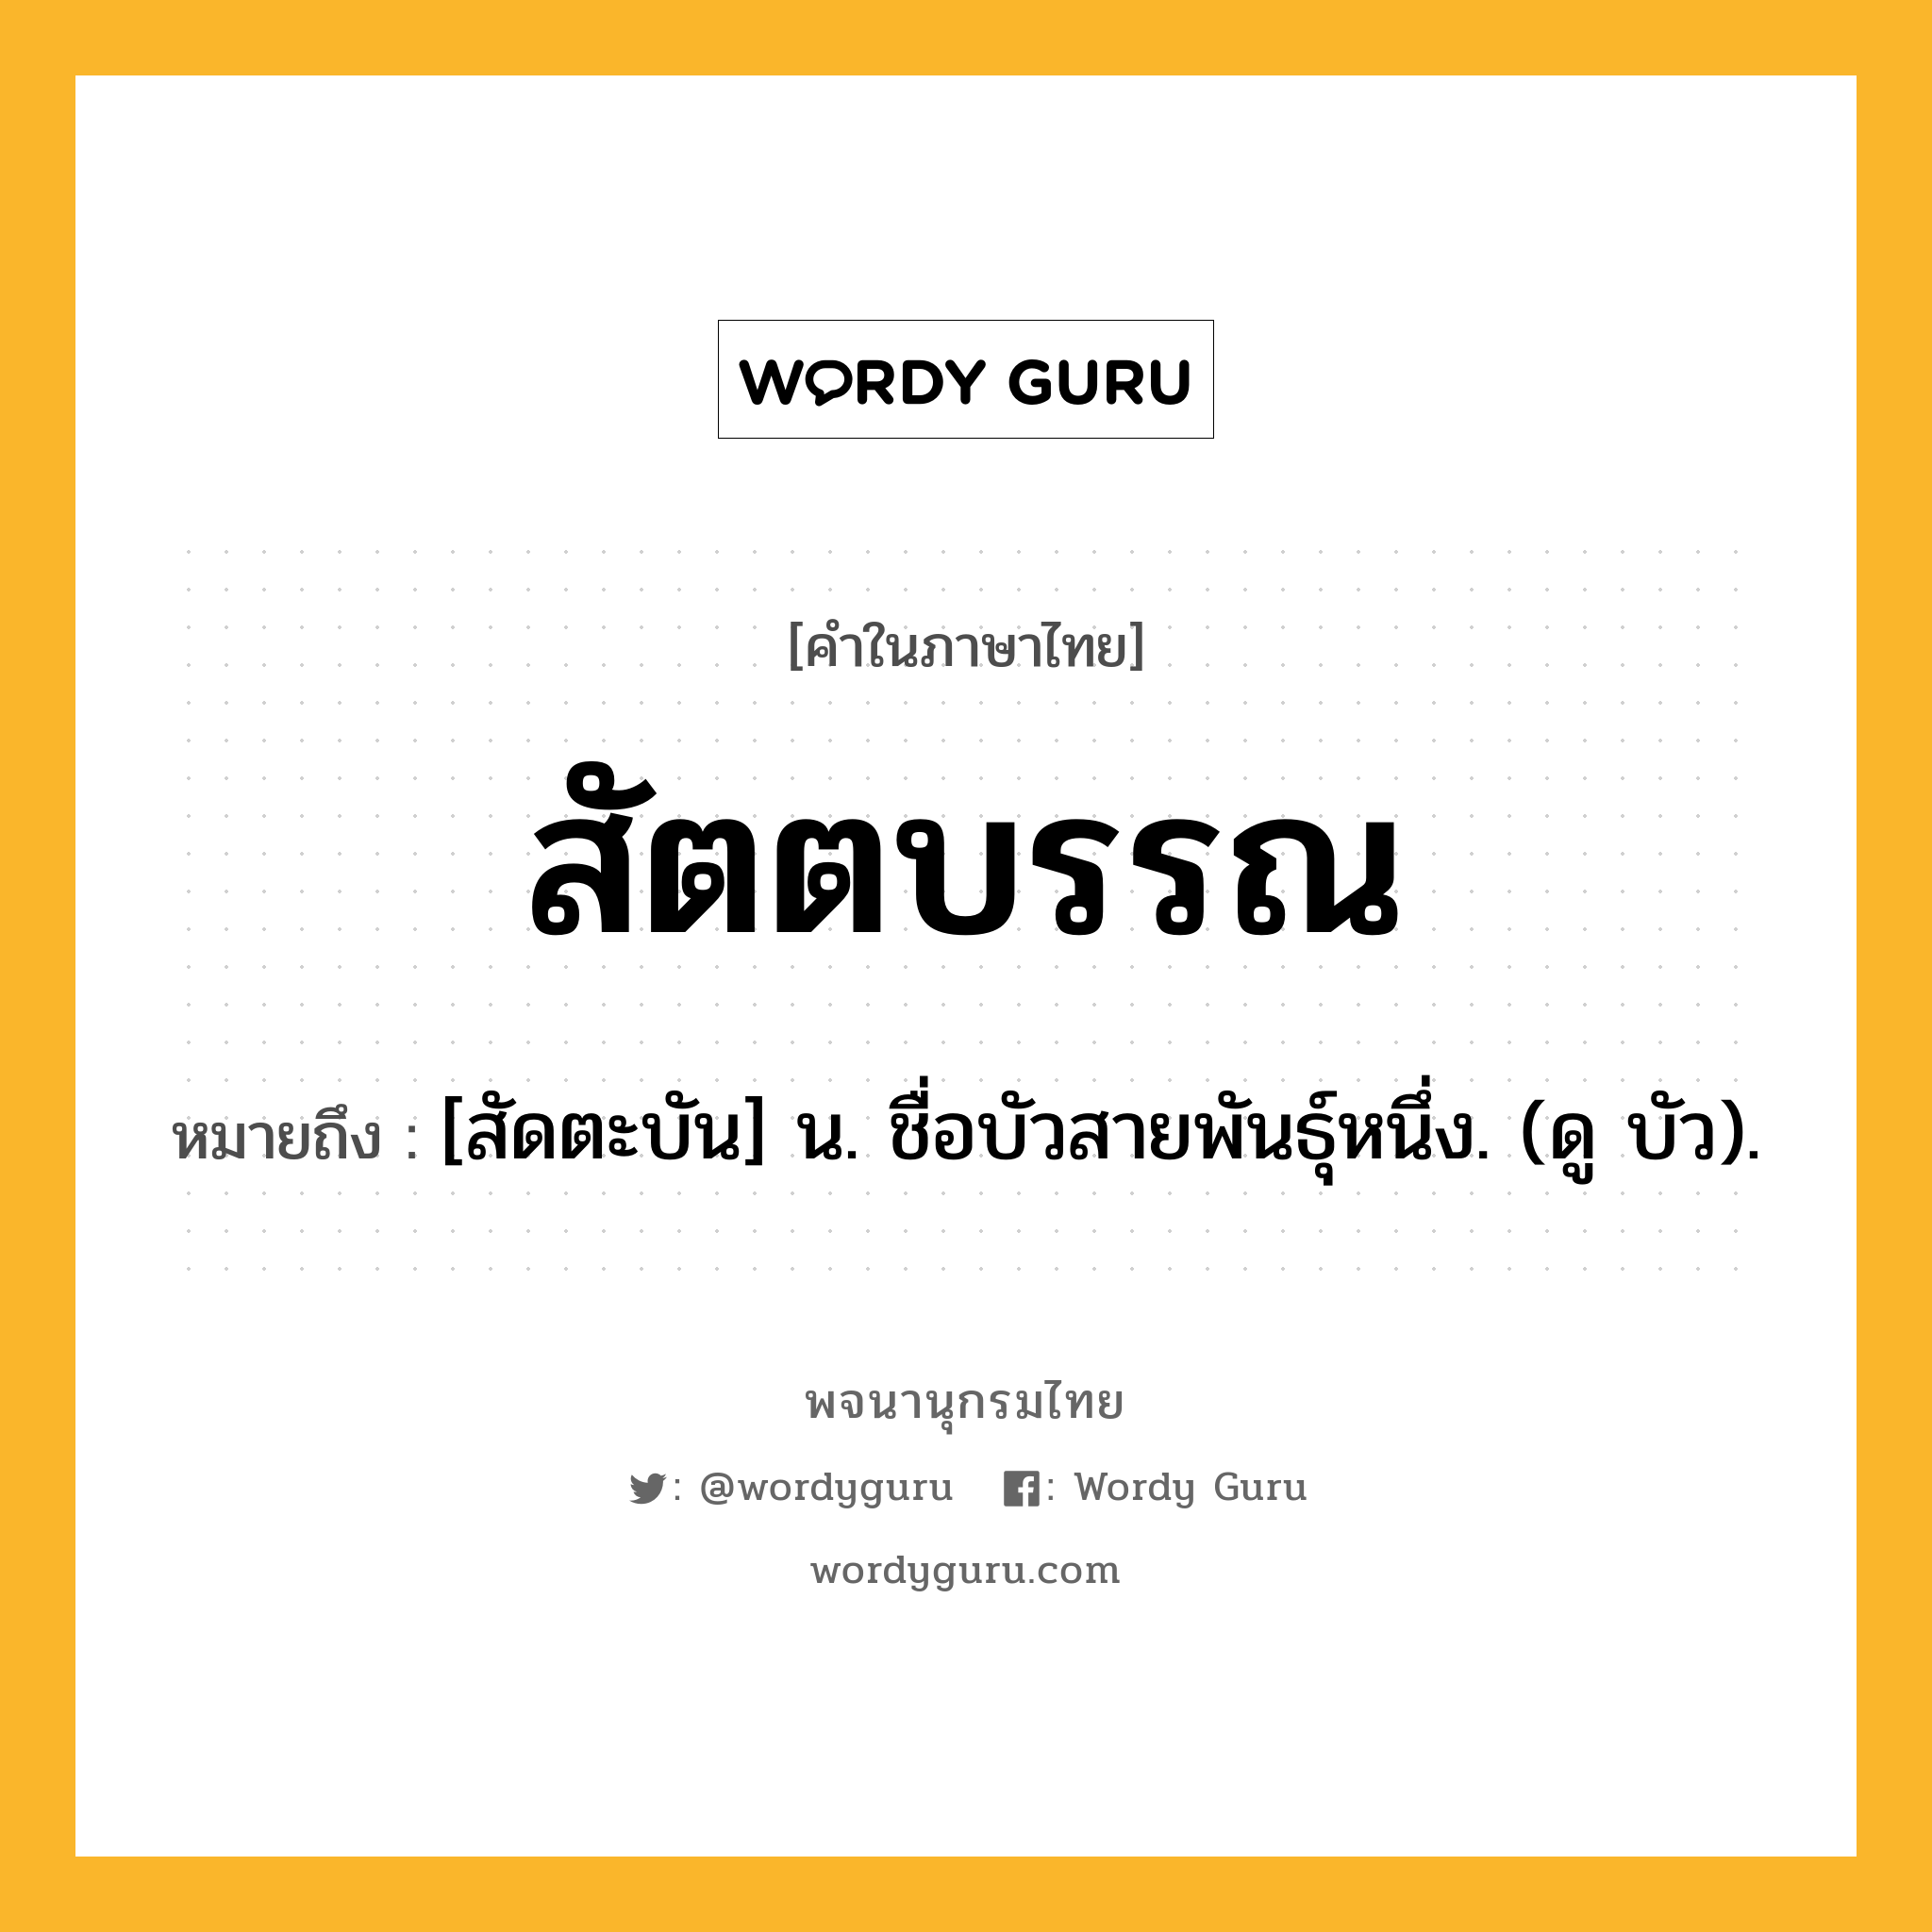 สัตตบรรณ ความหมาย หมายถึงอะไร?, คำในภาษาไทย สัตตบรรณ หมายถึง [สัดตะบัน] น. ชื่อบัวสายพันธุ์หนึ่ง. (ดู บัว).